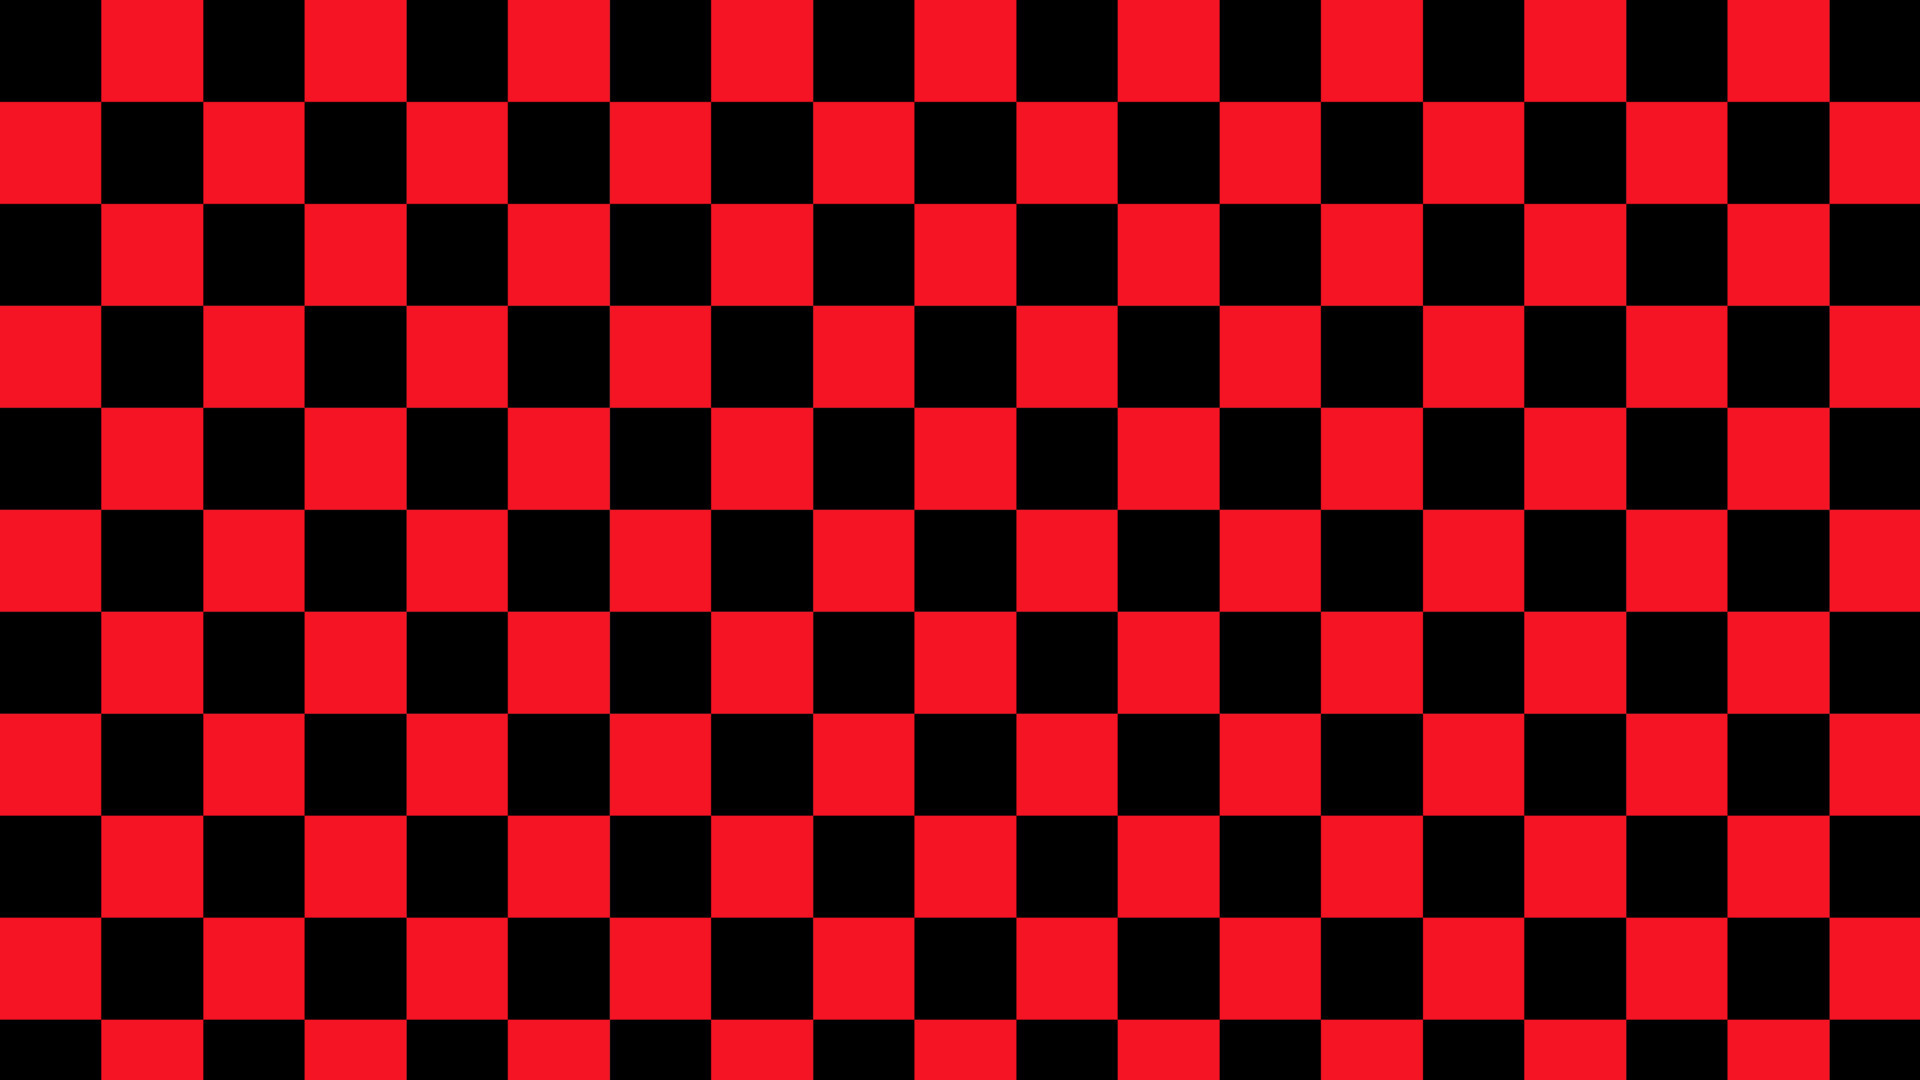 Hình nền ô vuông đen đỏ thẩm mỹ là loại hình nền độc đáo mà bạn không nên bỏ qua! Được thiết kế với sự kết hợp tuyệt vời giữa đen, đỏ, và trắng, nó tạo ra hiệu ứng ấn tượng và độc đáo.